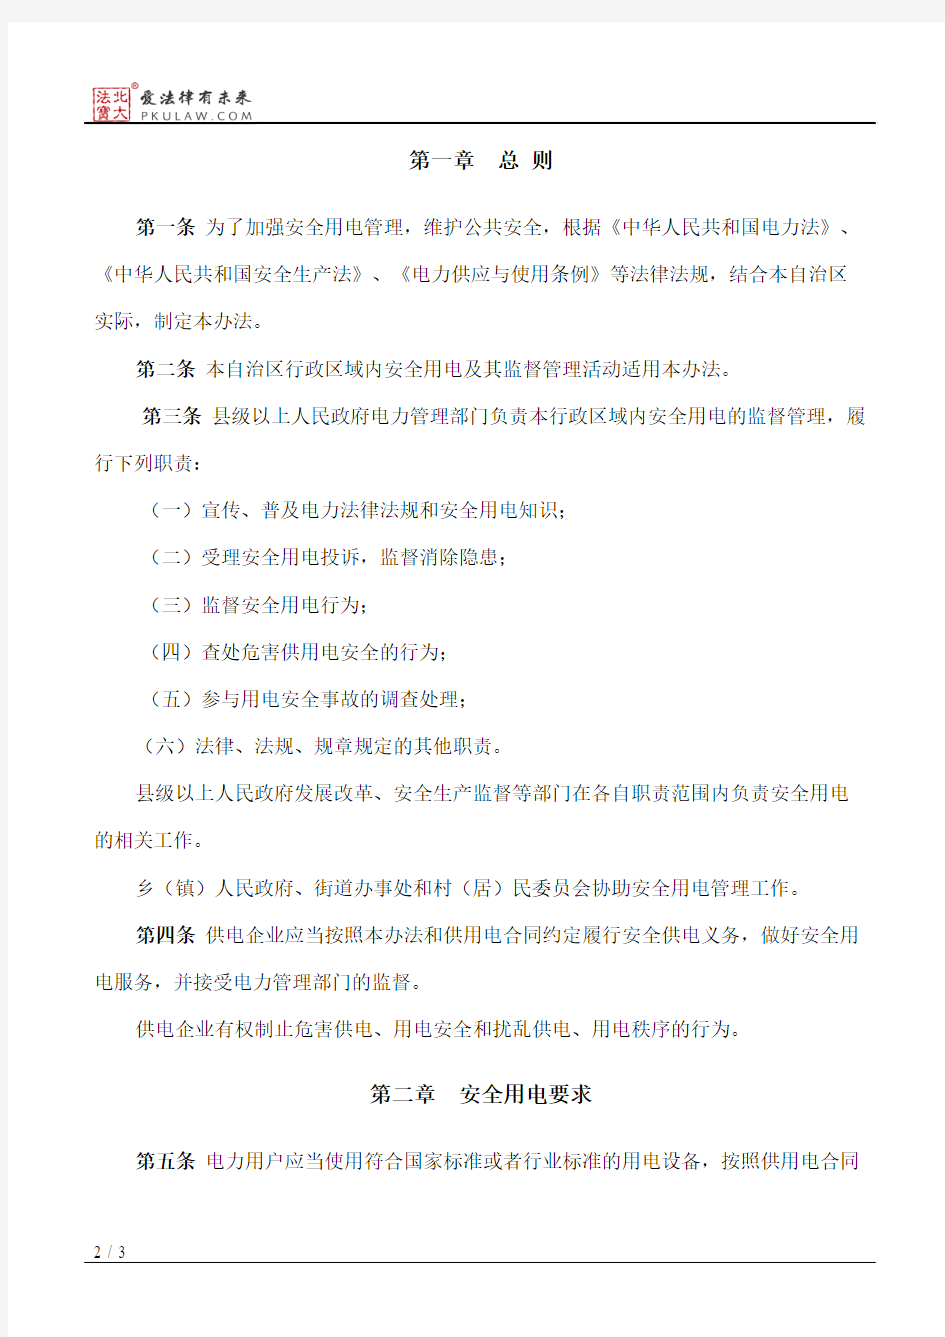 广西壮族自治区安全用电管理办法